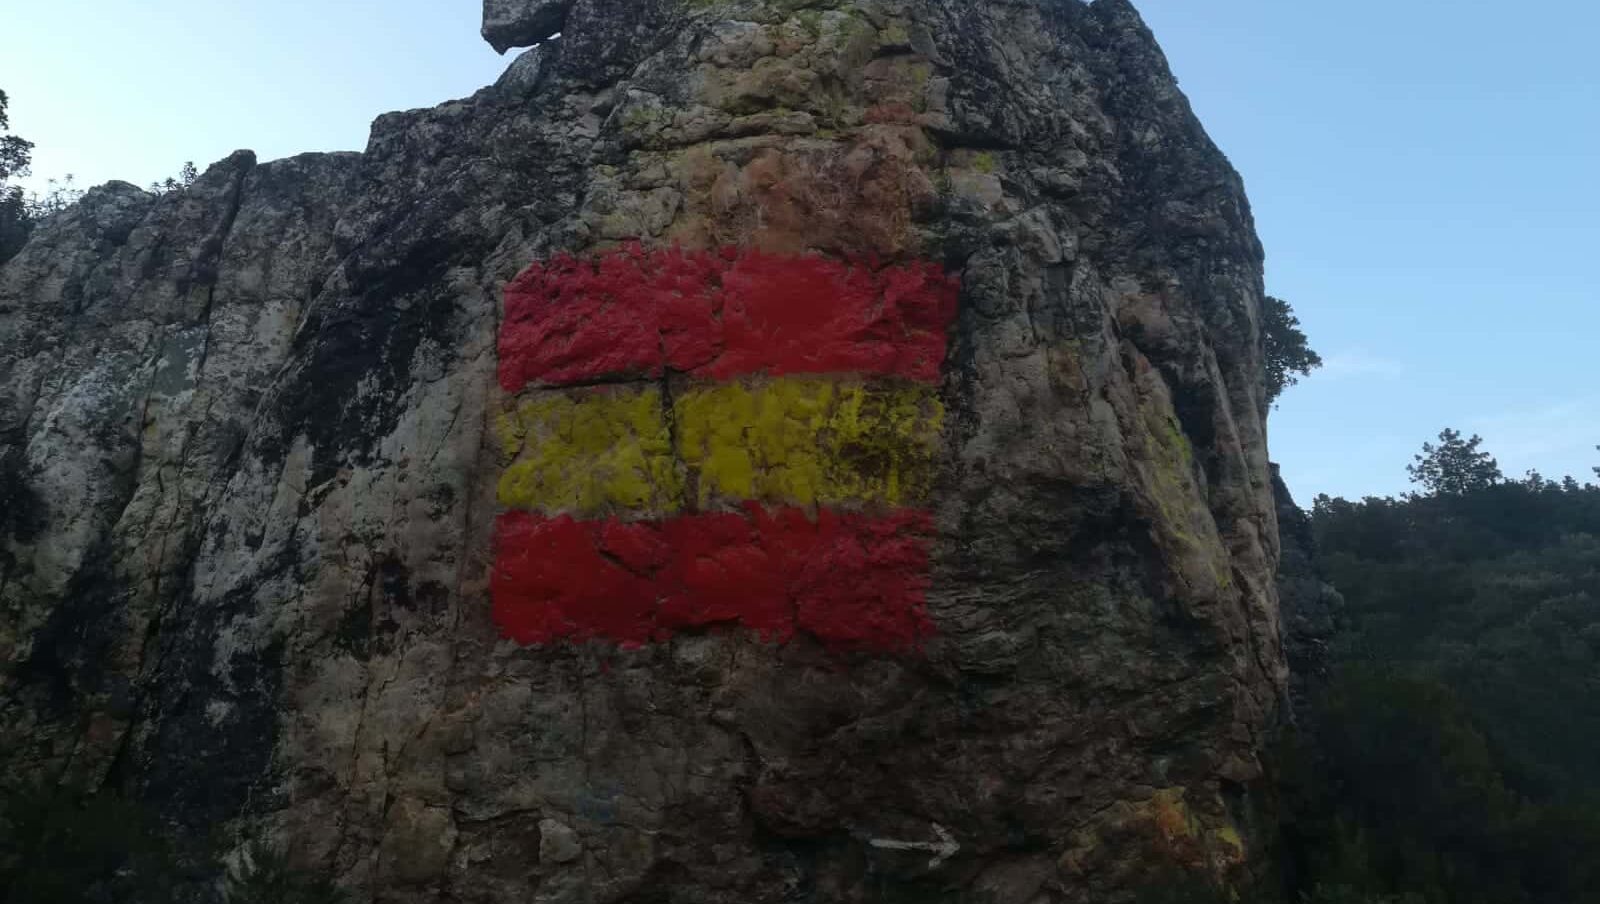 Pinturas rupestres vandalizadas con una bandera de España